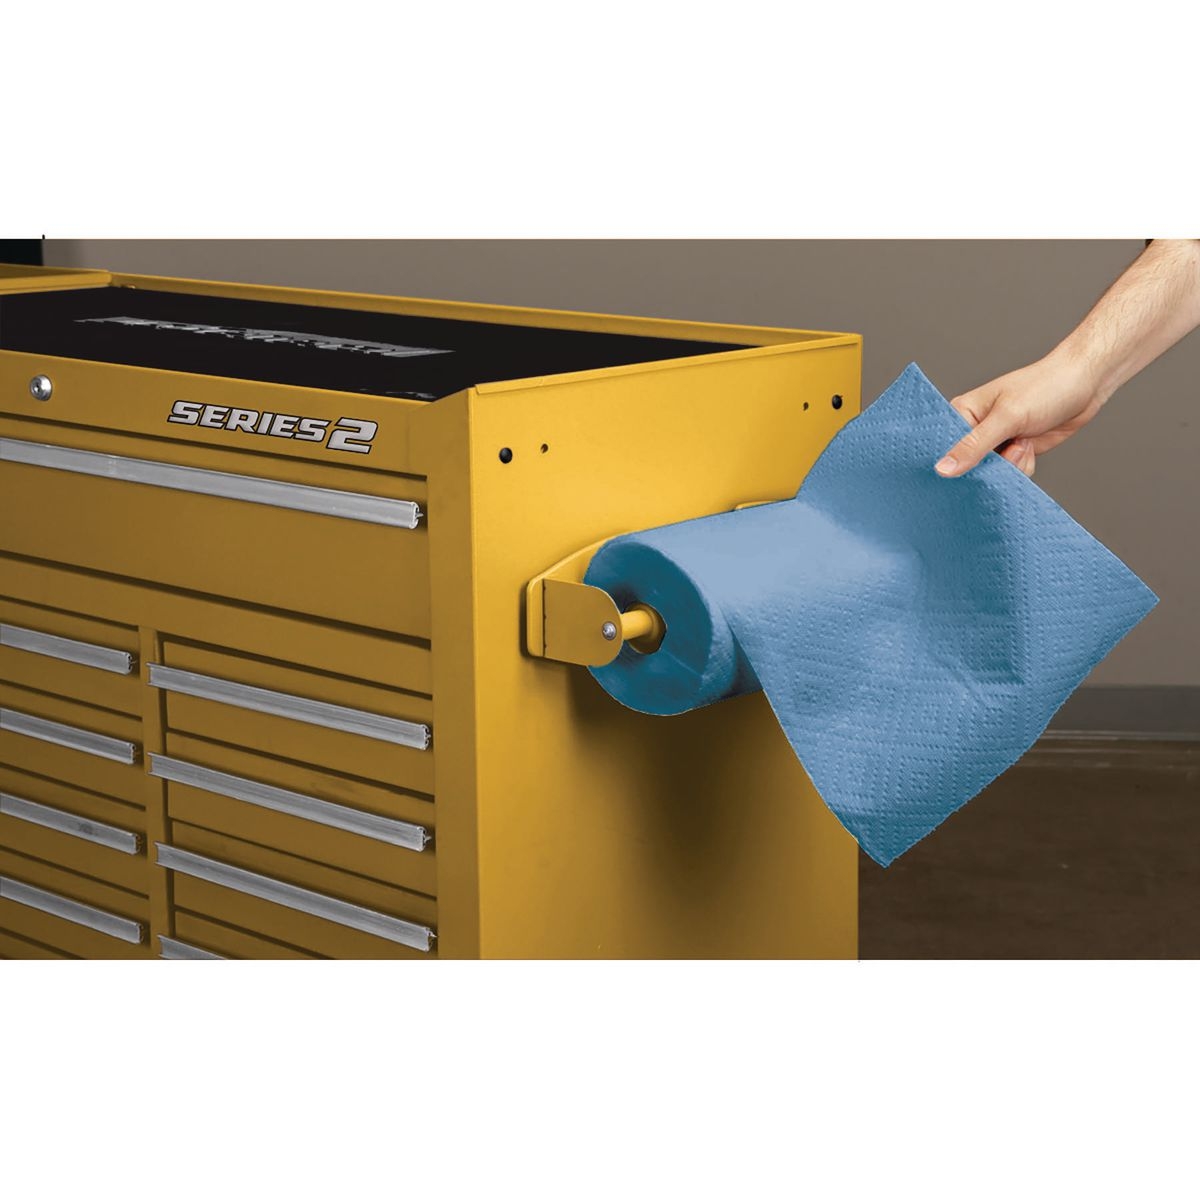 U.S. GENERAL Magnetic Paper Towel Holder - Yellow - Item 56456